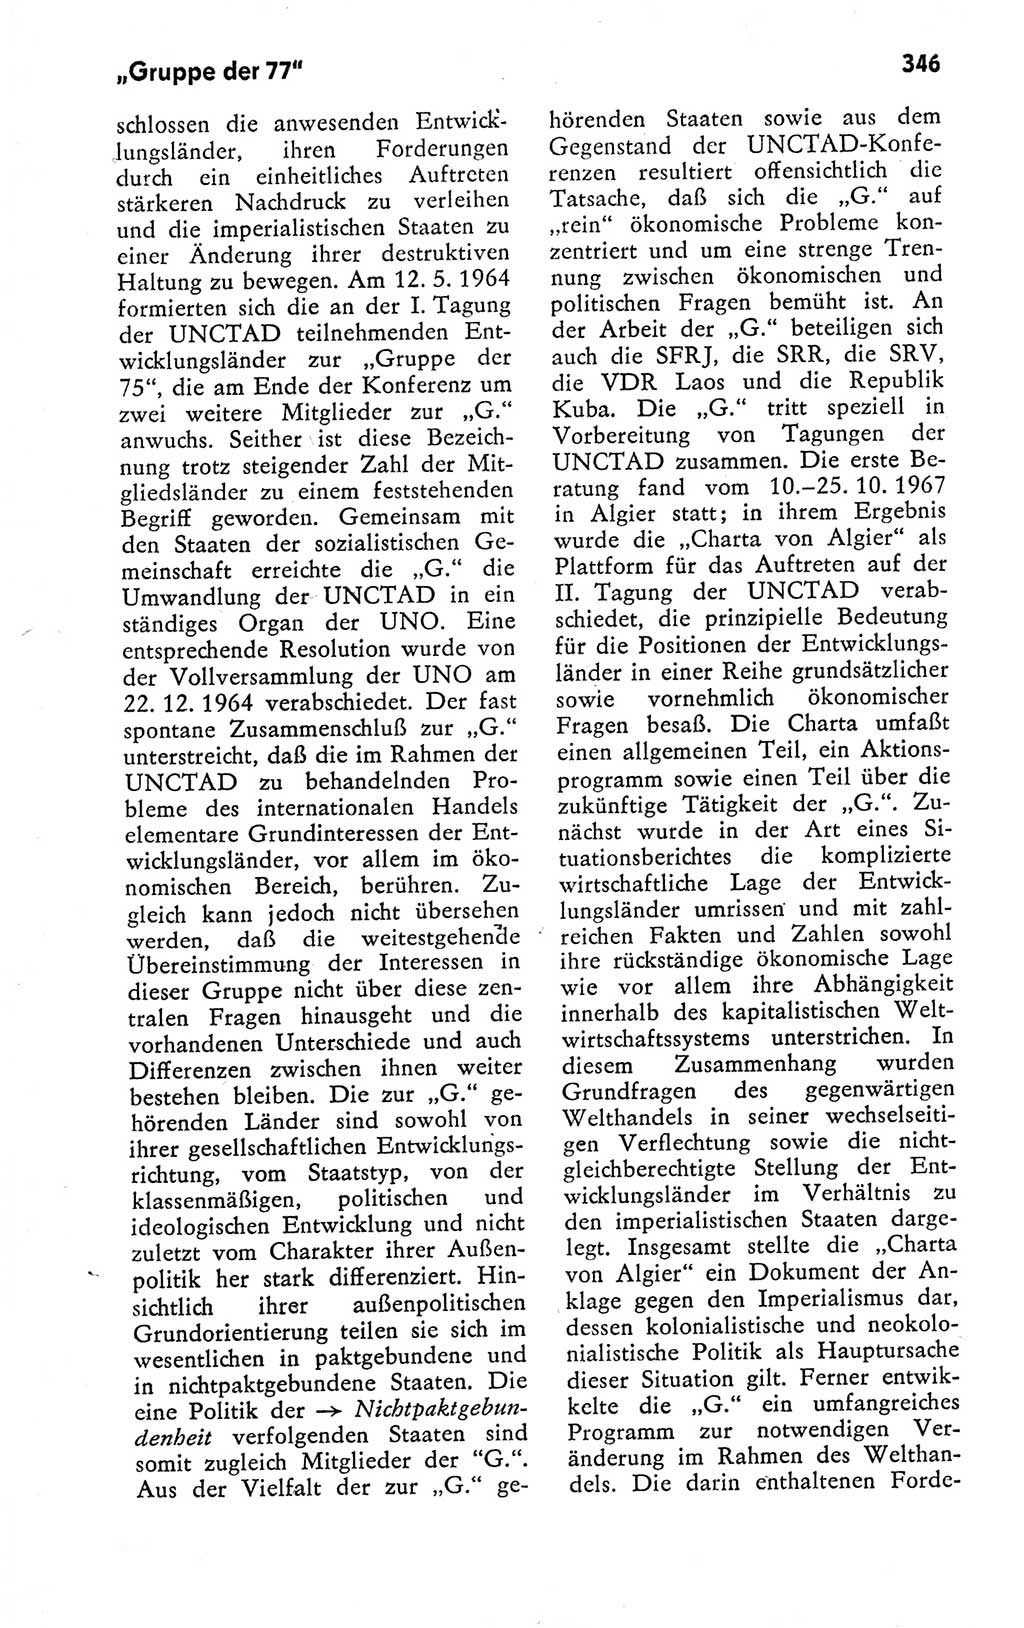 Kleines politisches Wörterbuch [Deutsche Demokratische Republik (DDR)] 1978, Seite 346 (Kl. pol. Wb. DDR 1978, S. 346)